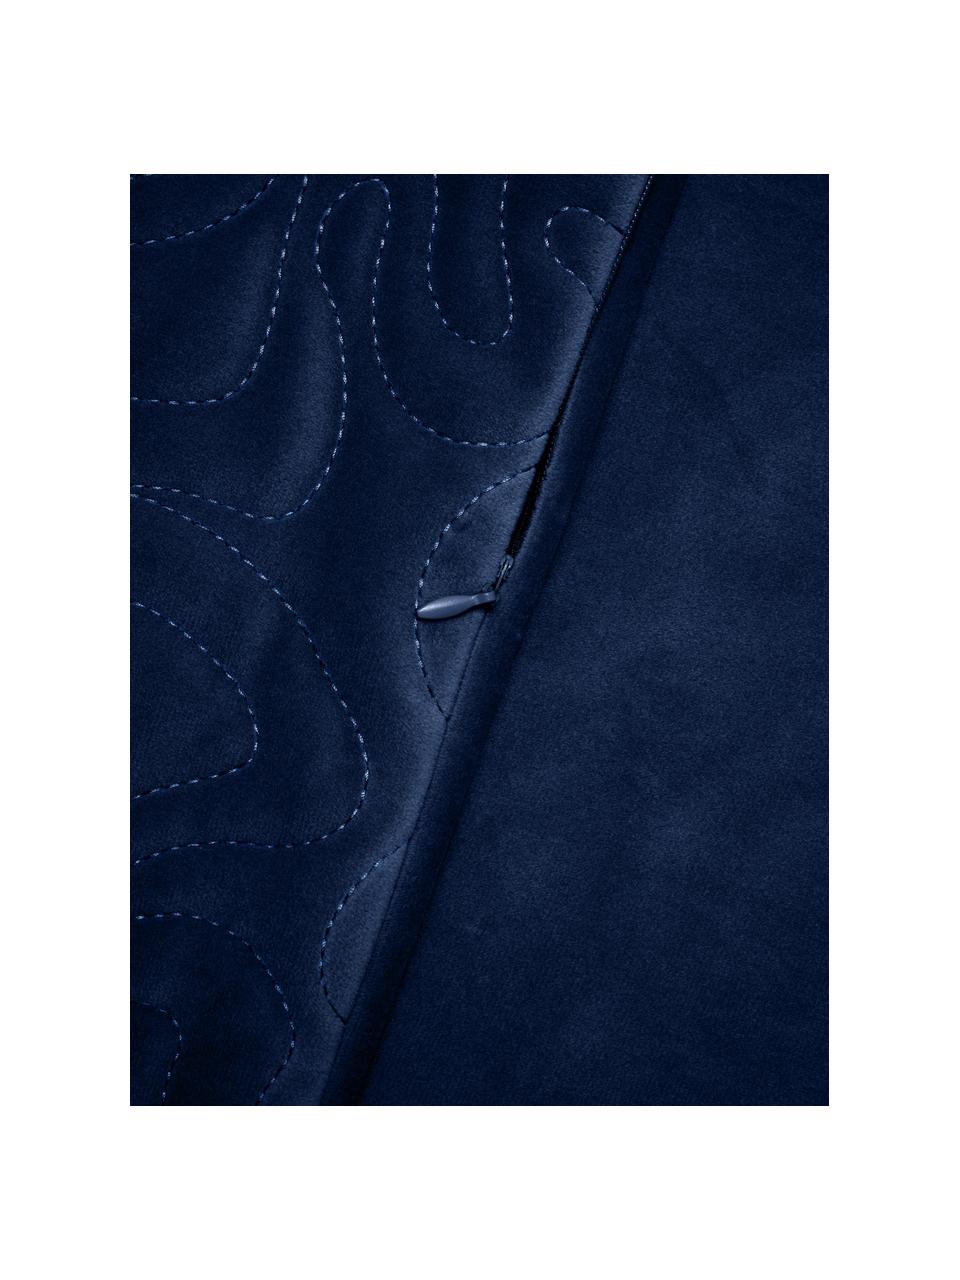 Samt-Kissenhülle Hera mit dekorativer Verzierung in Dunkelblau, 100 % recyceltes Polyester, Samt Dunkelblau, B 45 x L 45 cm